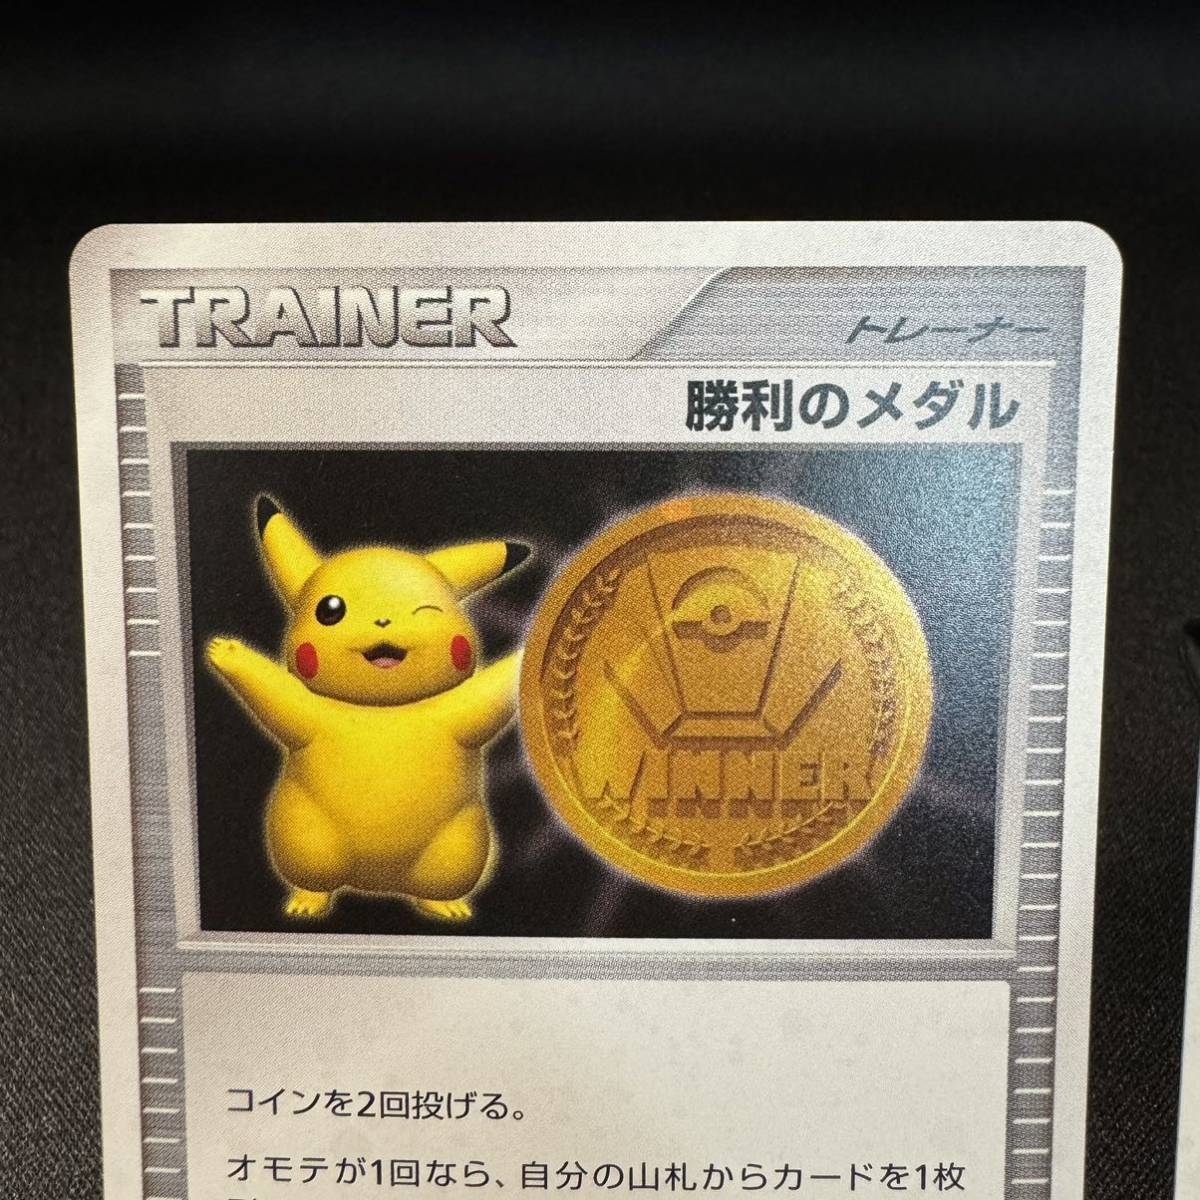 【即決】勝利のメダル 金 銀 プロモ 2枚 pokemon card ポケカ ポケモンカード PROMO 2007 2006 トレーナー medal  ピカチュウ Pikachu ジム